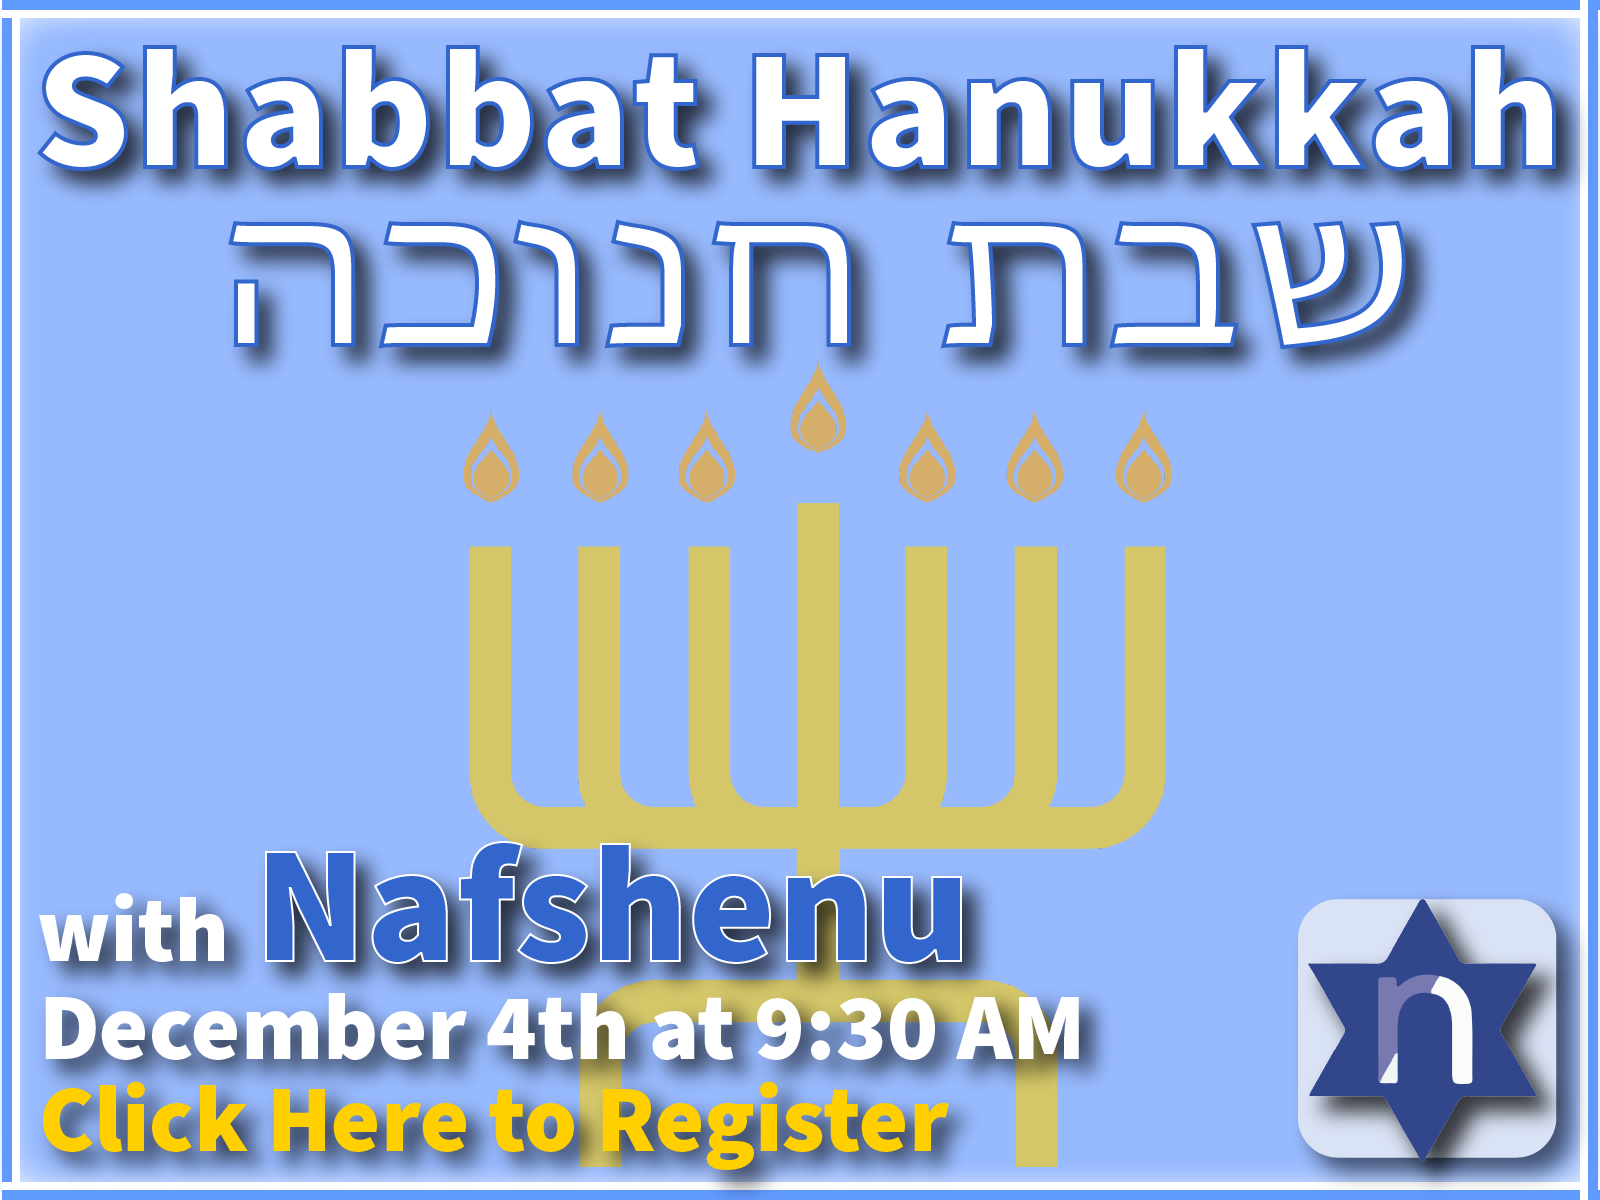 Shabbat Hanukkah